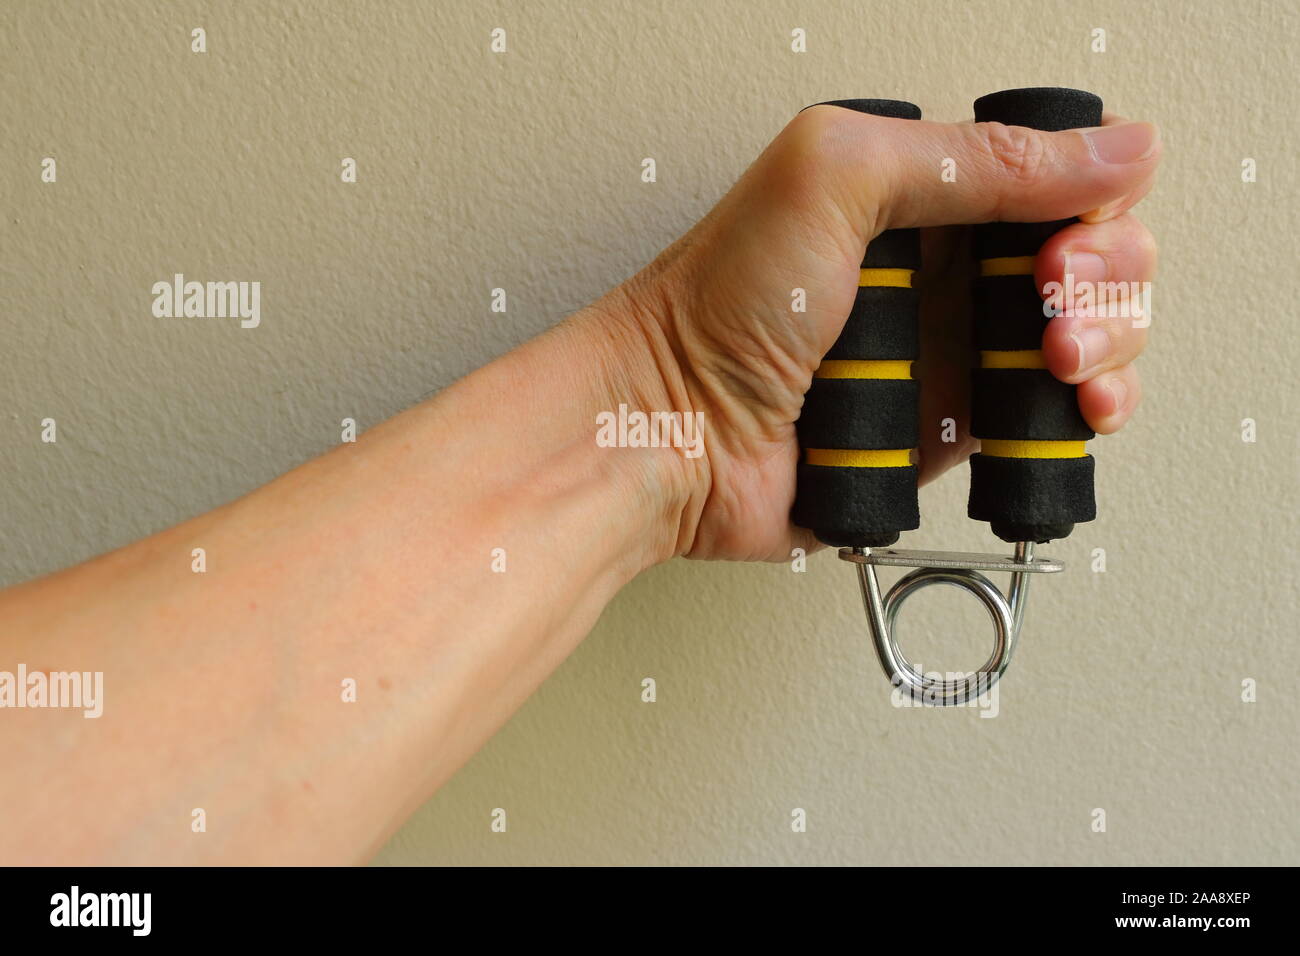 Closeup mano izquierda sosteniendo y apretando la mano riostras, esta herramienta puede ser usada para aliviar la tensión y mejorar la capacidad de alimentación de mano Foto de stock